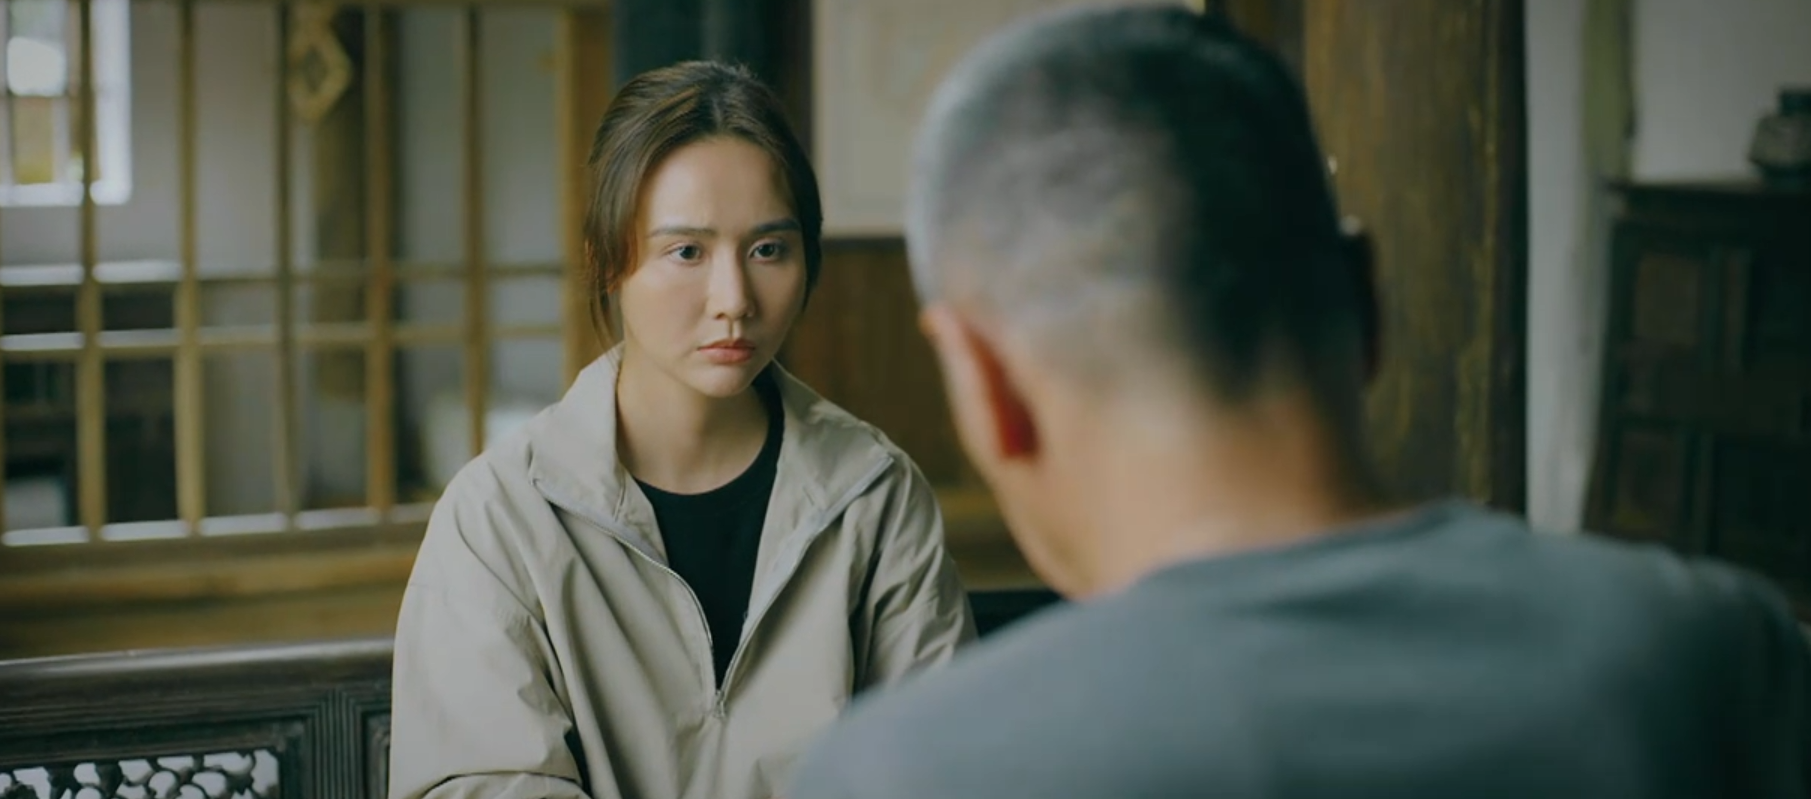 Chúng ta của 8 năm sau - Tập 20: Dương muốn đón ông Quảng về ở chung, Lâm quan tâm cuộc sống của người cũ